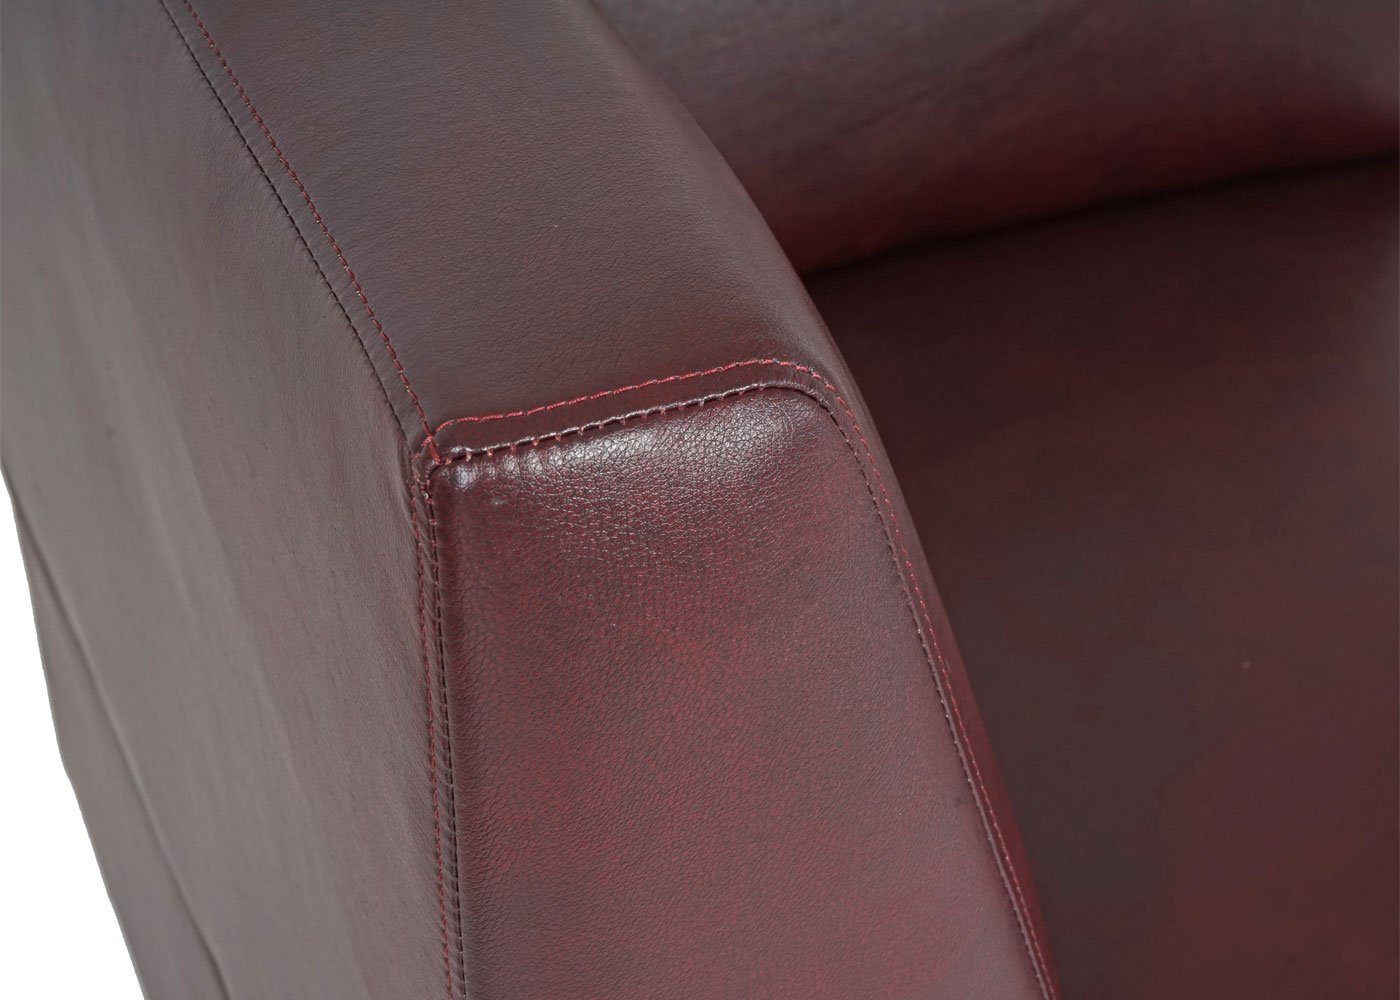 MCW 3-Sitzer Moncalieri-3S, rot-braun Verarbeitung, Polsterung Lounge-Stil, rot-braun hochwertige bequeme | moderner